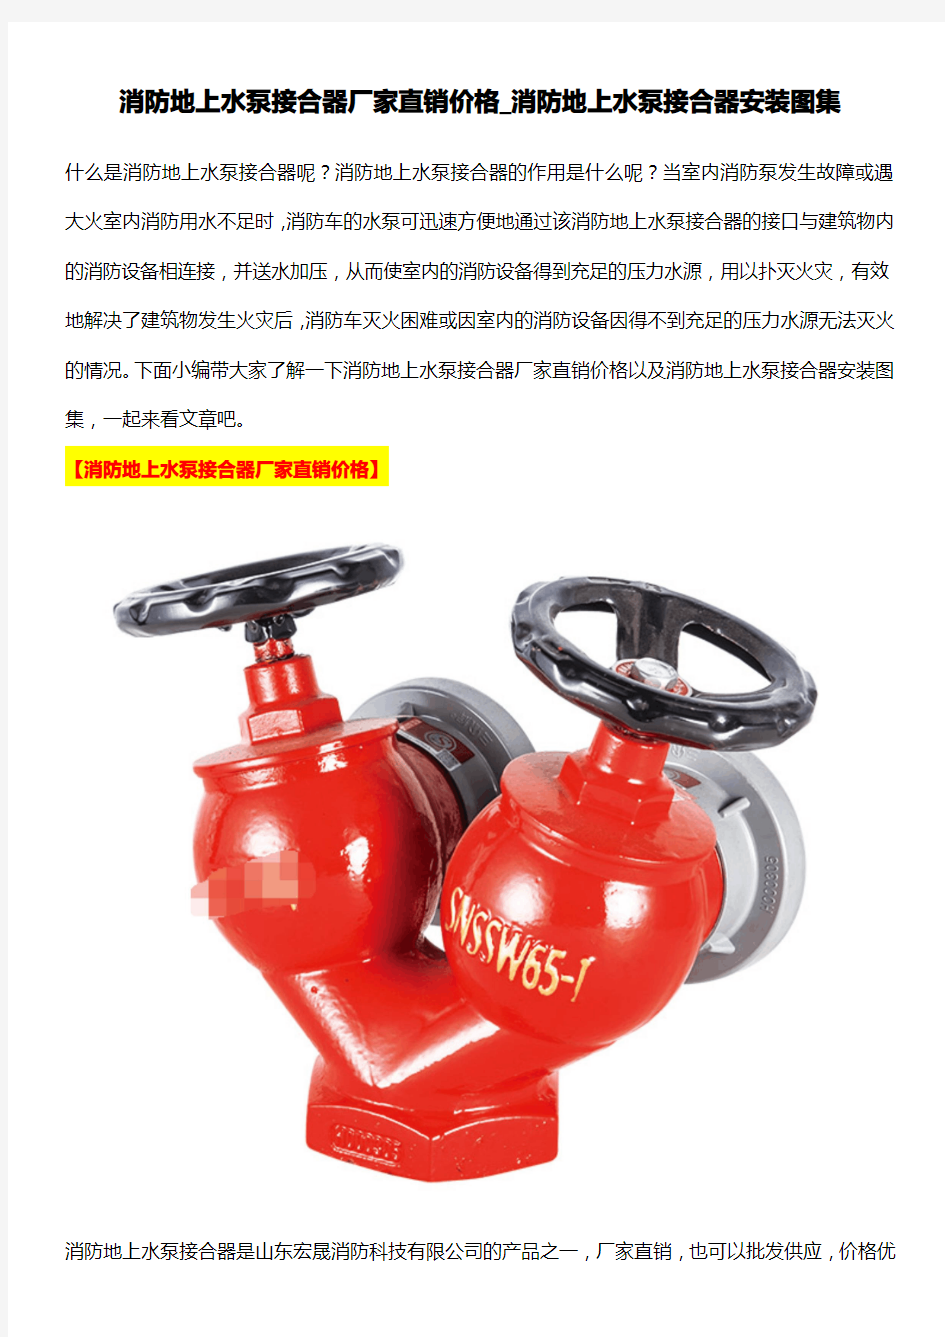 消防地上水泵接合器厂家直销价格_消防地上水泵接合器安装图集